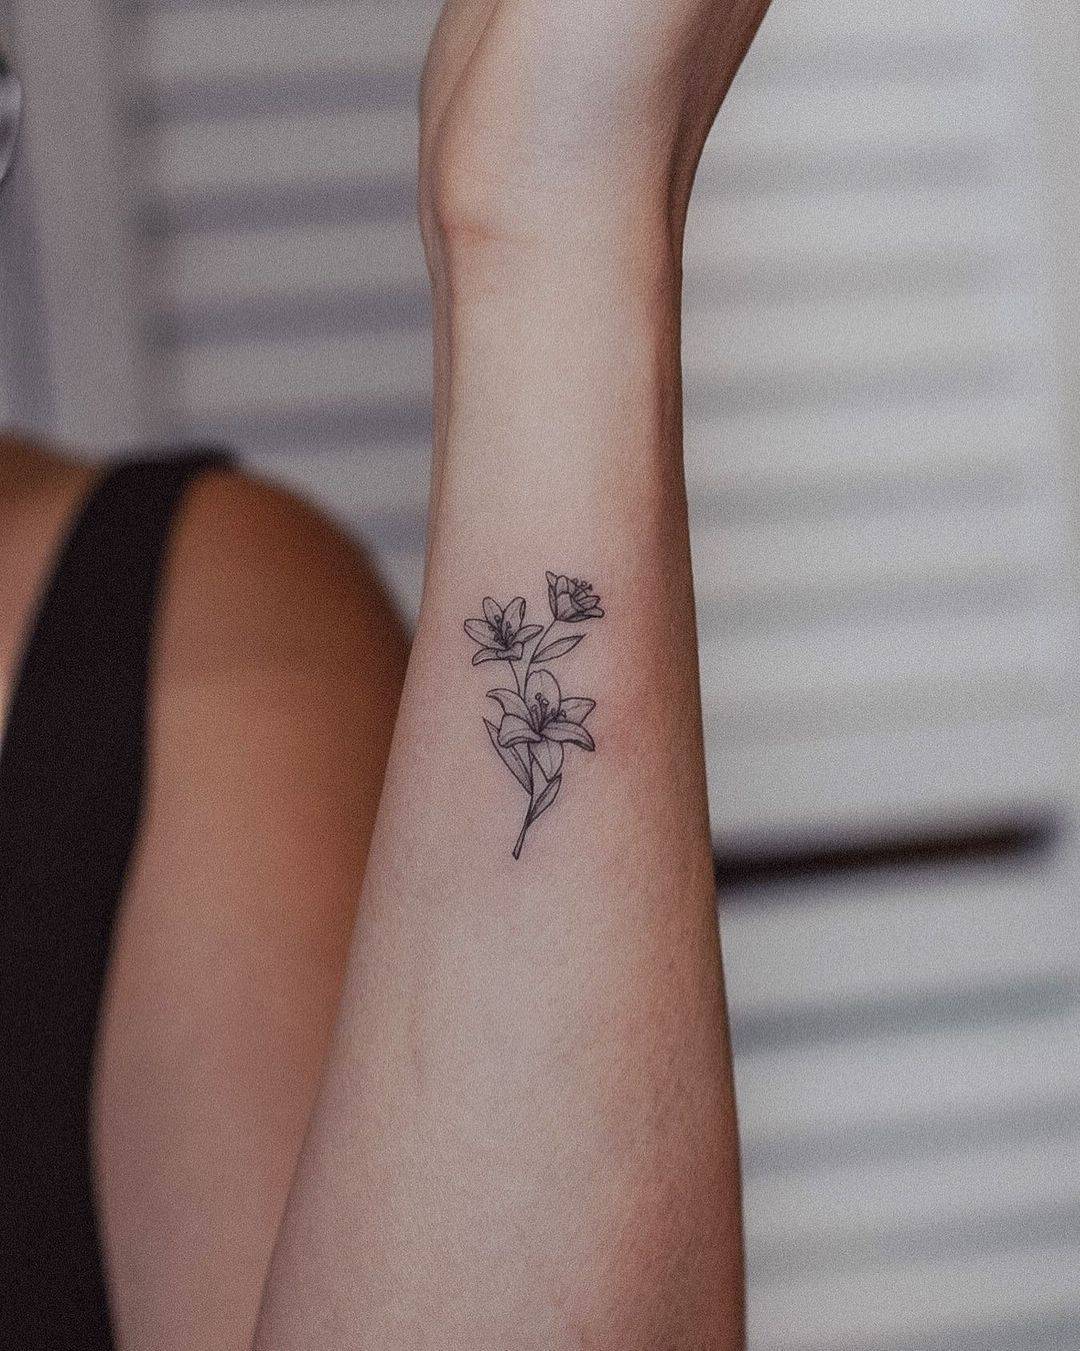 Lily tattoo on wrist by tavi tattoo